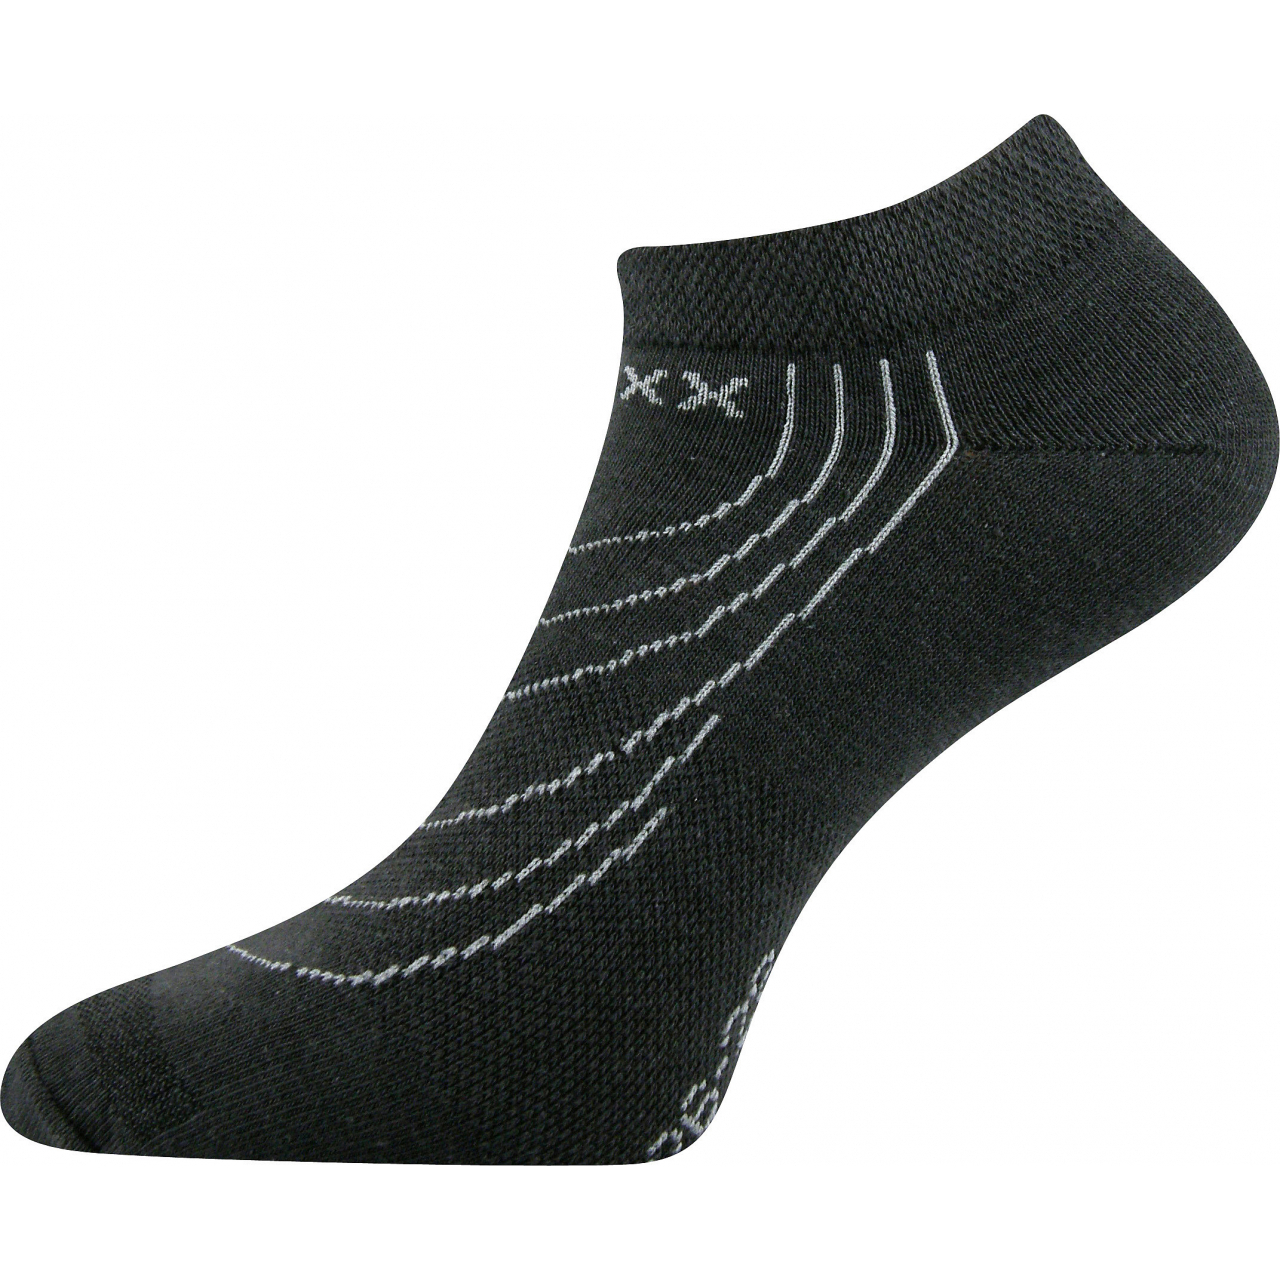 Ponožky nízké Voxx Rex - tmavě šedé, 39-42